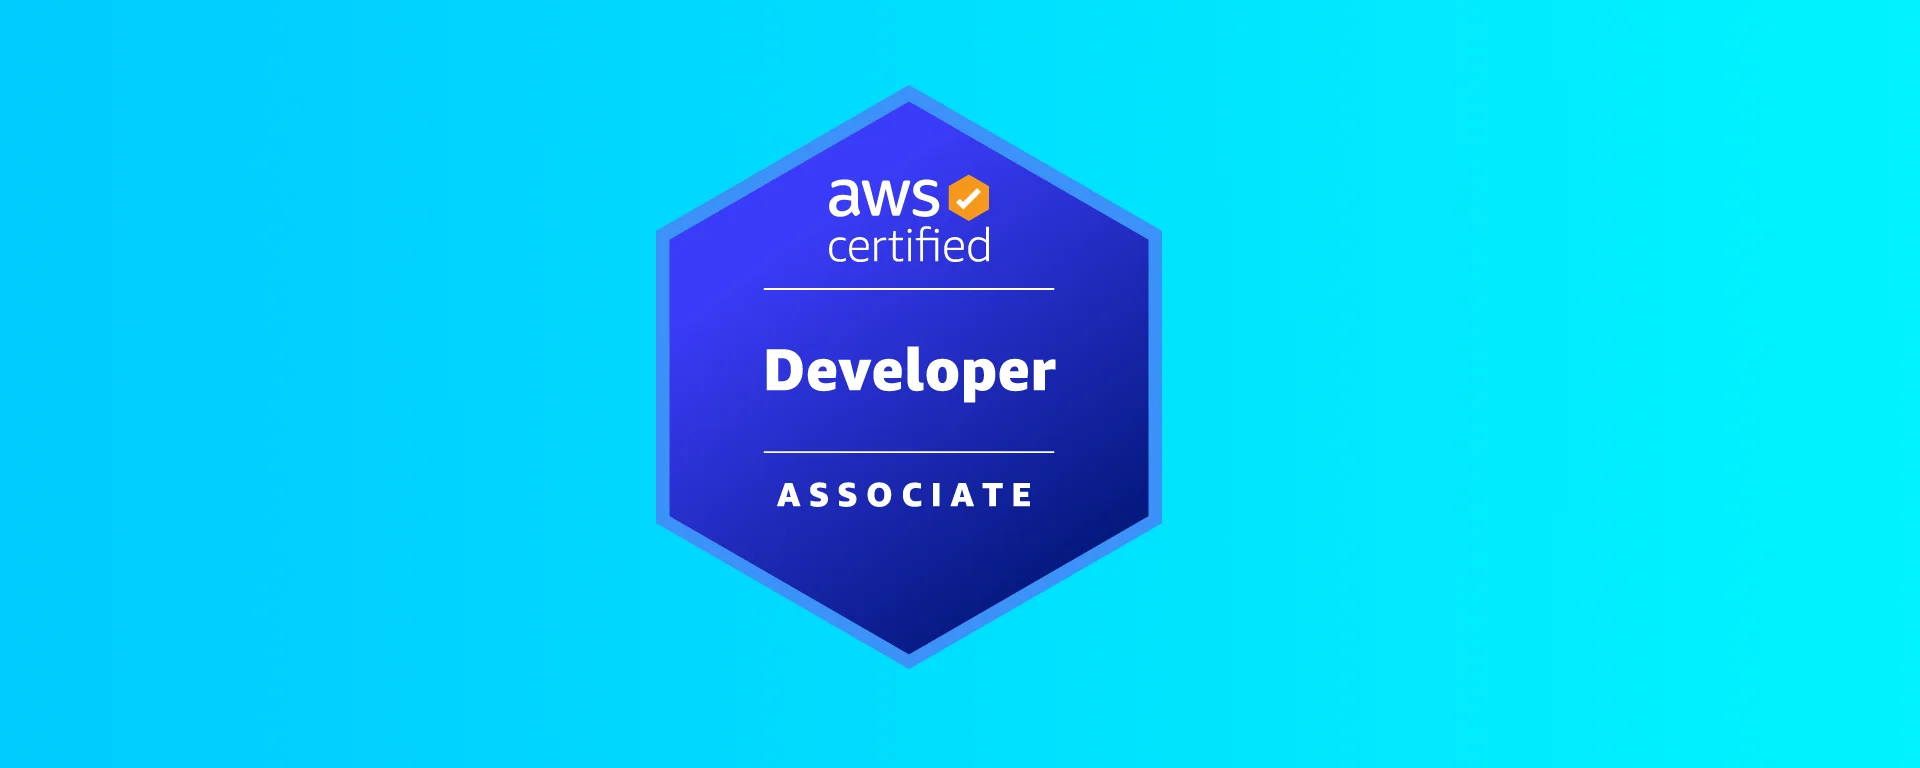 Free exam guide: AWS Certified Developer Associate